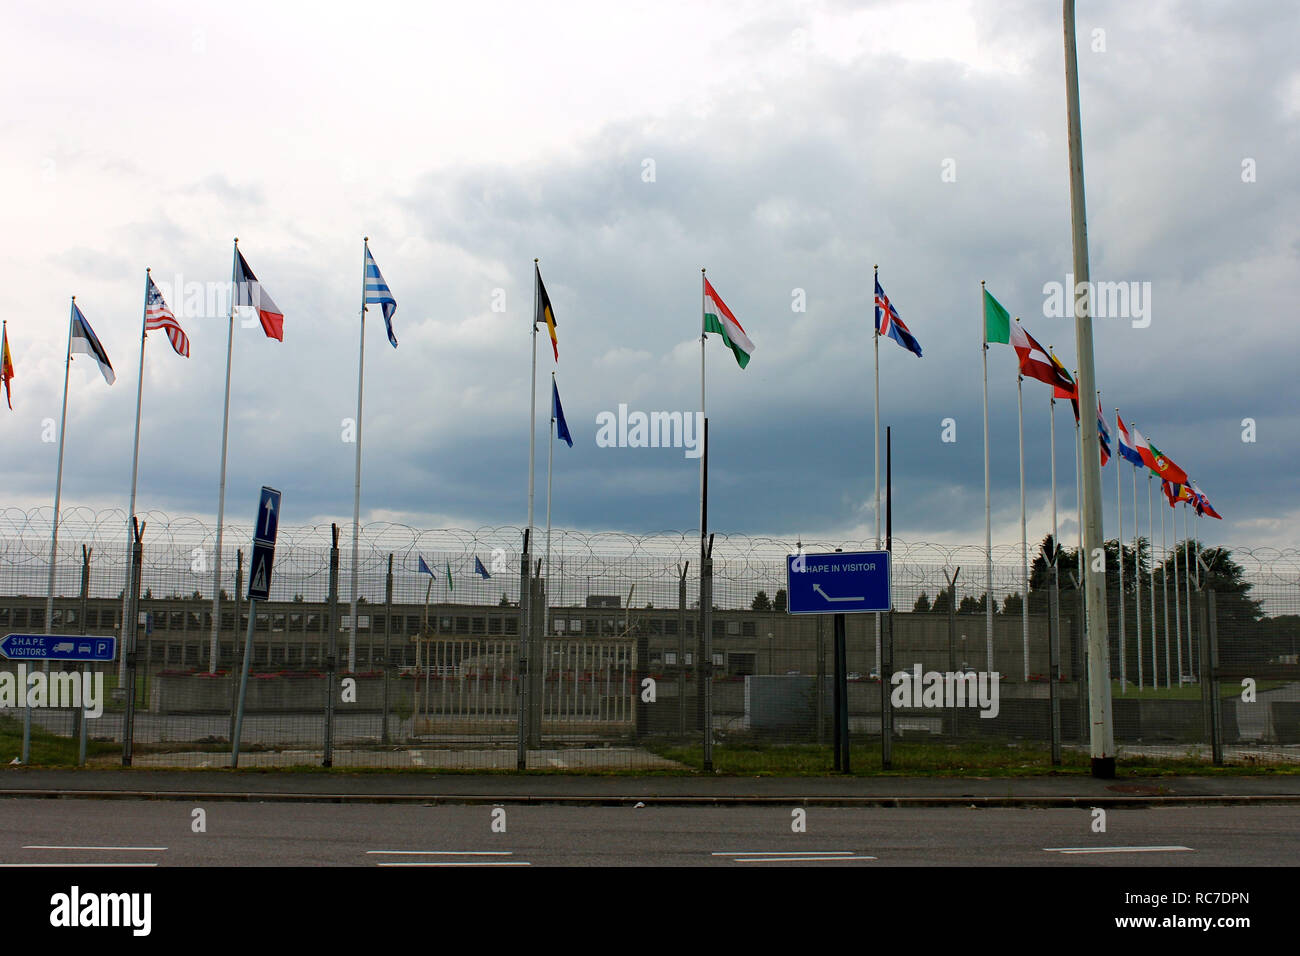 Mons, Belgio. La forma (Quartier generale supremo delle potenze alleate in Europa), sede dell'Organizzazione del Trattato del Nord Atlantico il Comando alleato Operatio Foto Stock